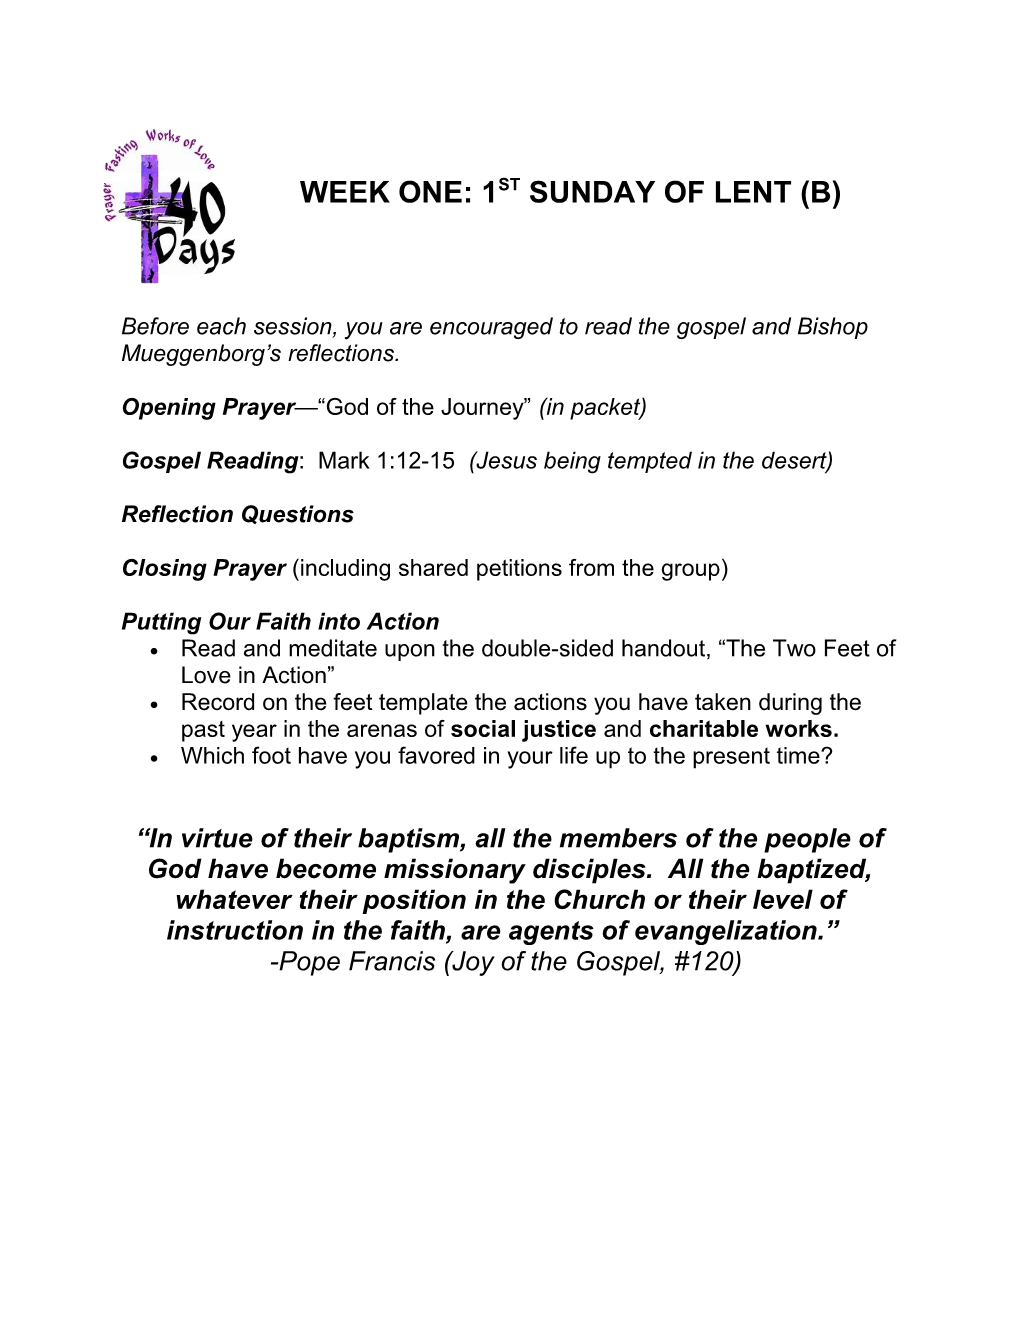 Week One: 1St Sunday of Lent (B)